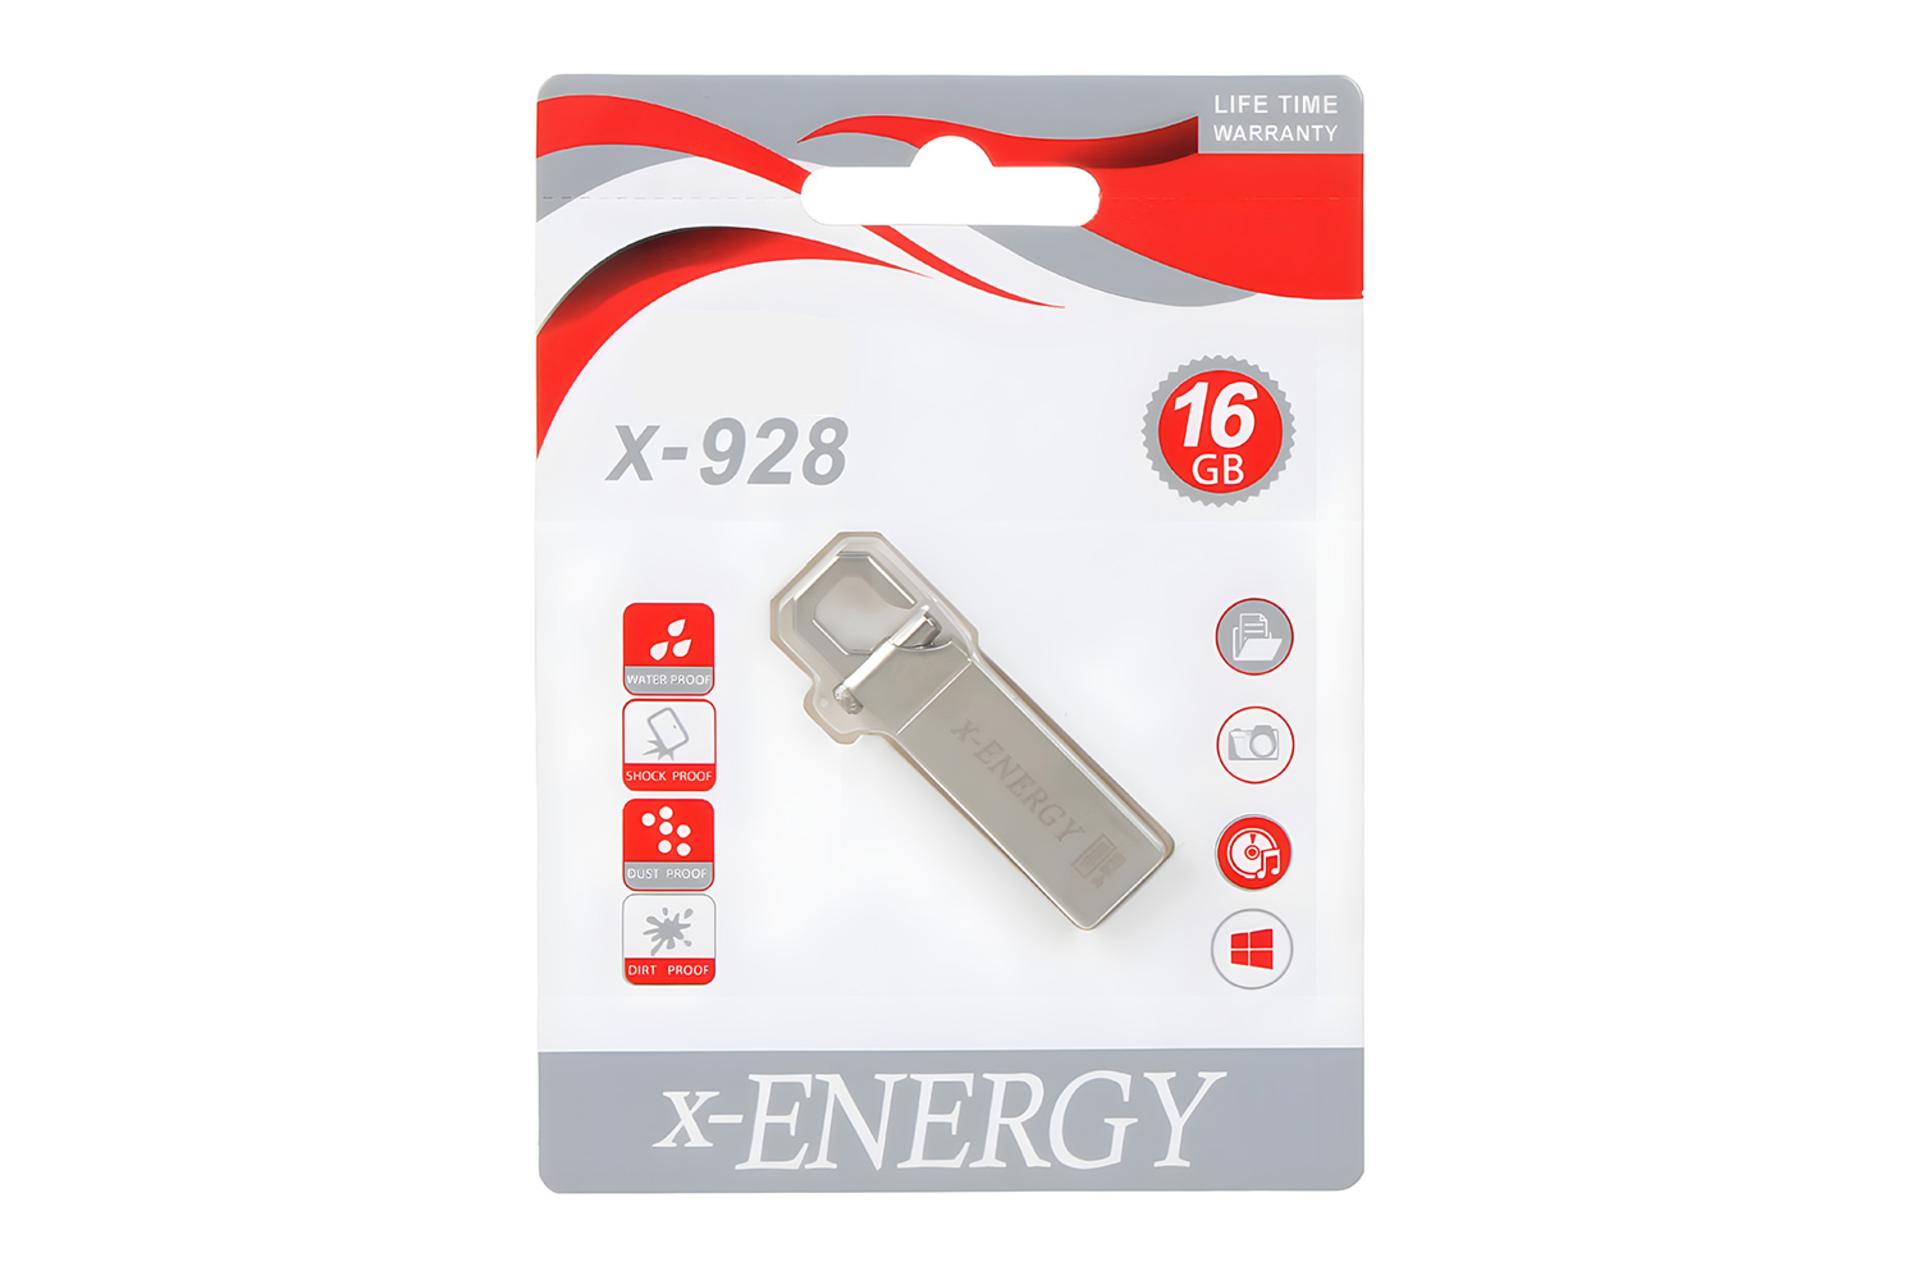 جعبه فلش مموری ایکس انرژی x-Energy X-928 16GB USB 2.0